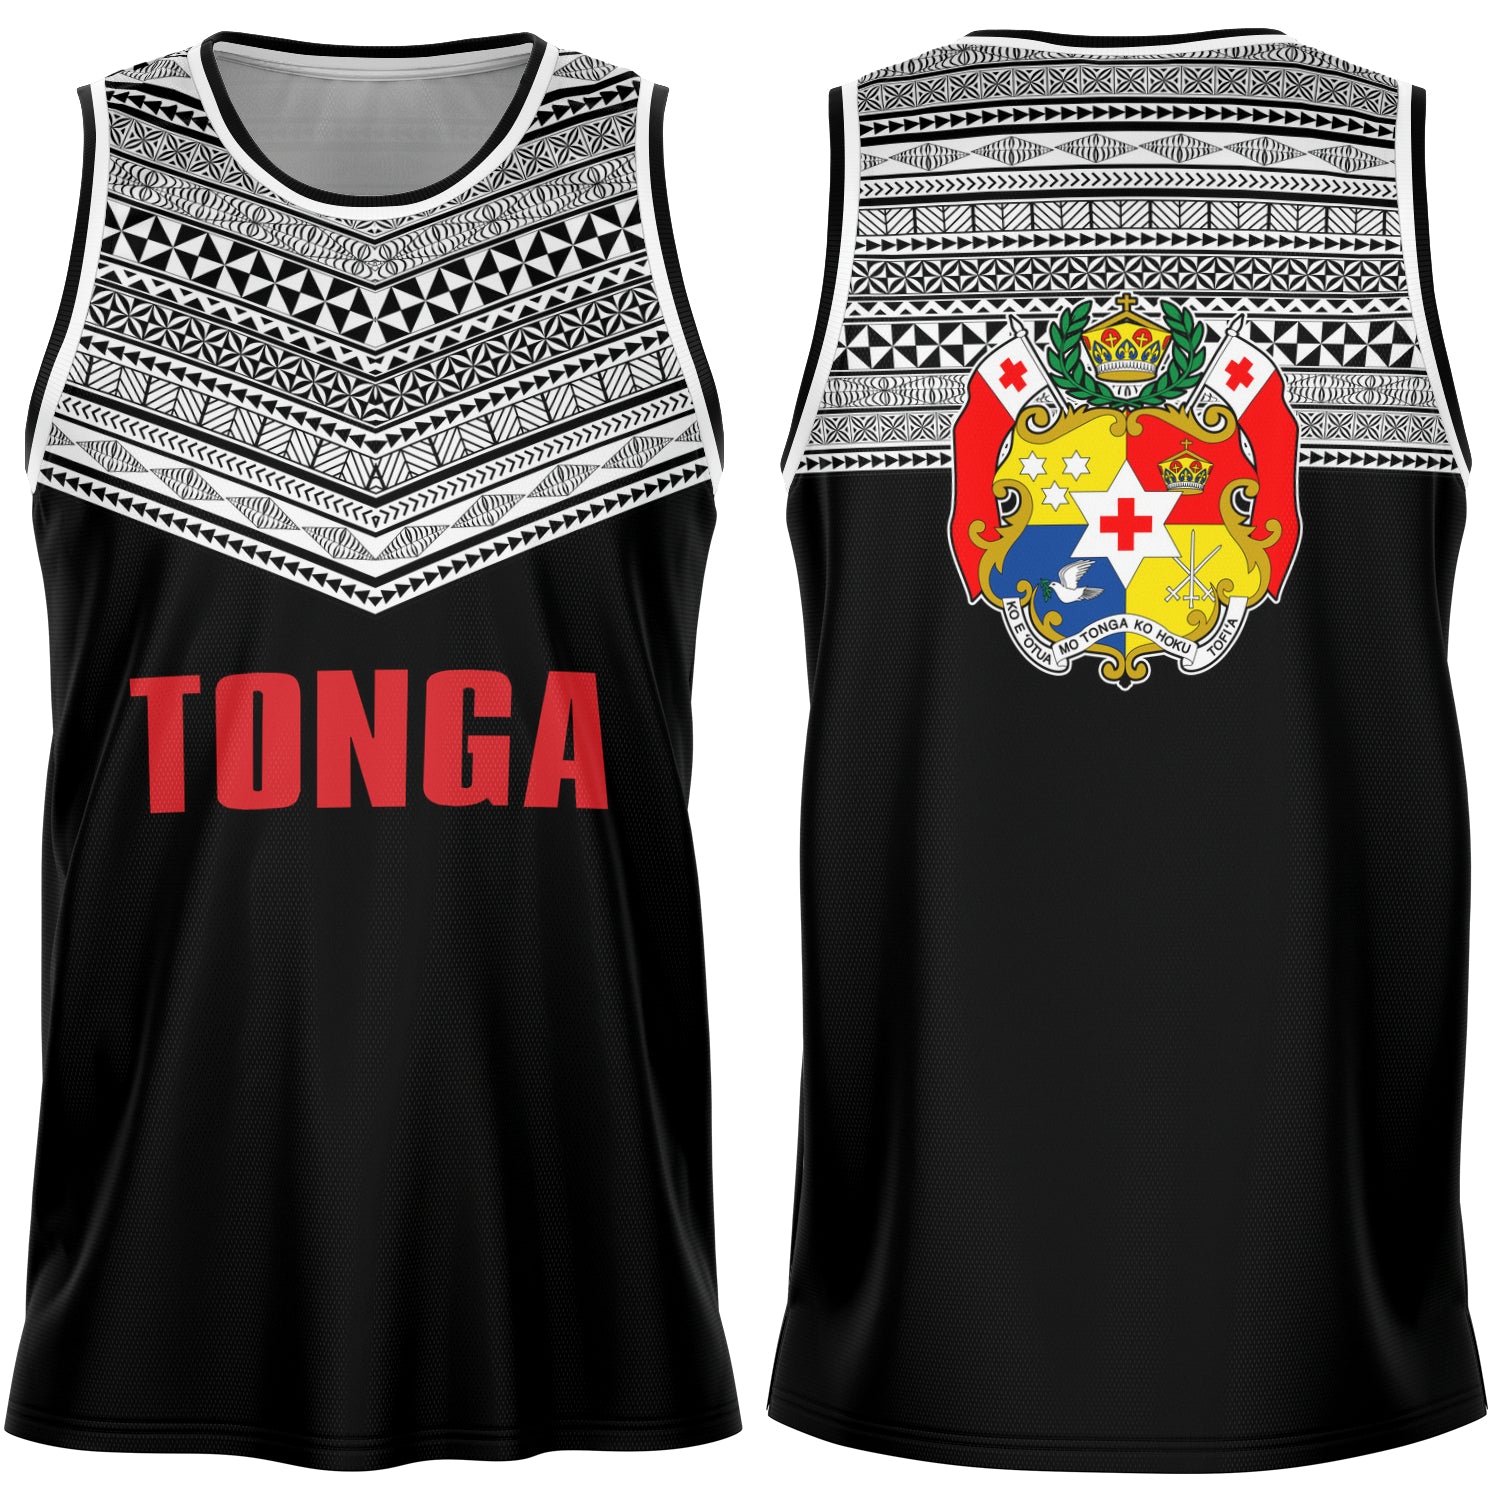 Sila Tonga Basketball Jersey - Tongan Design – Atikapu